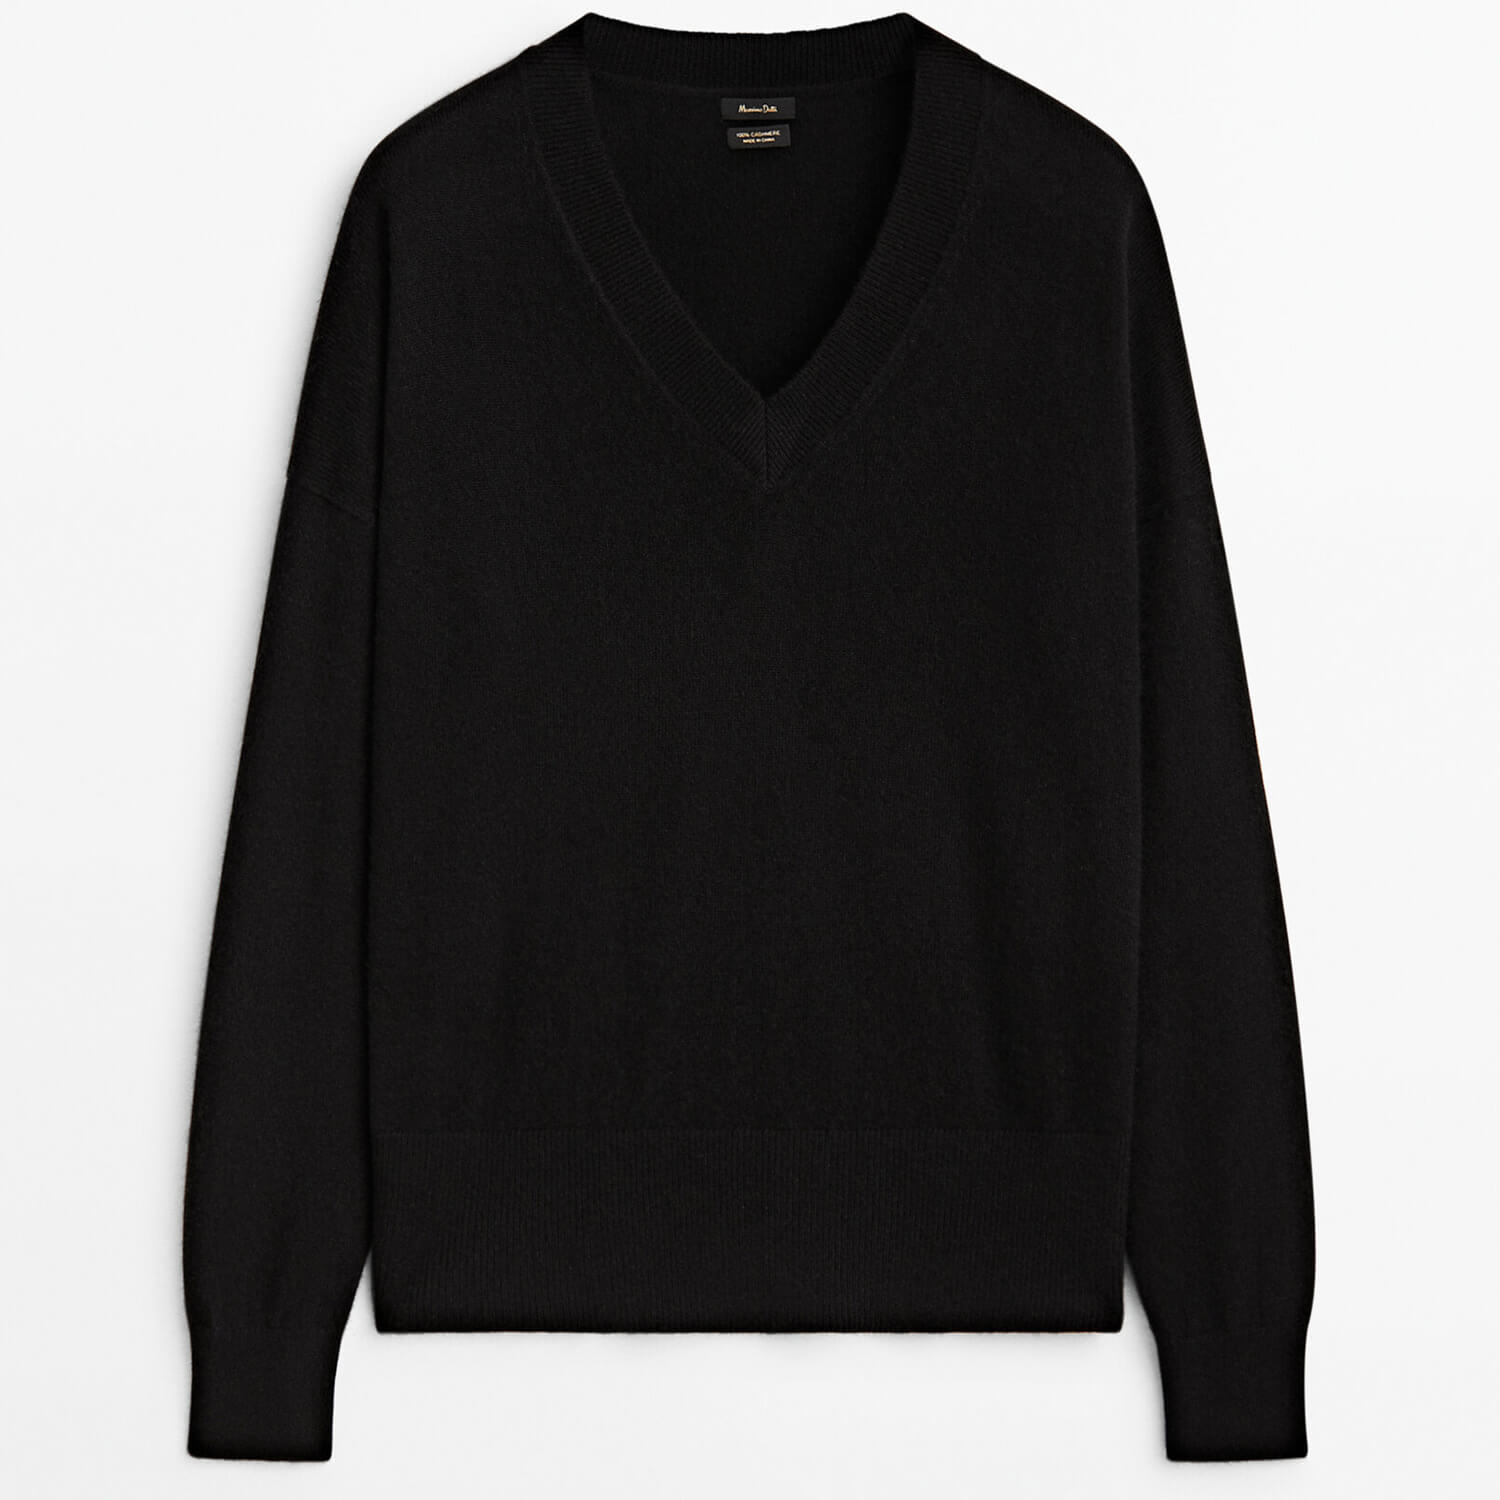 Свитер Massimo Dutti 100% Cashmere V-Neck, черный свитер massimo dutti wool and cashmere blend v neck тёмно зелёный